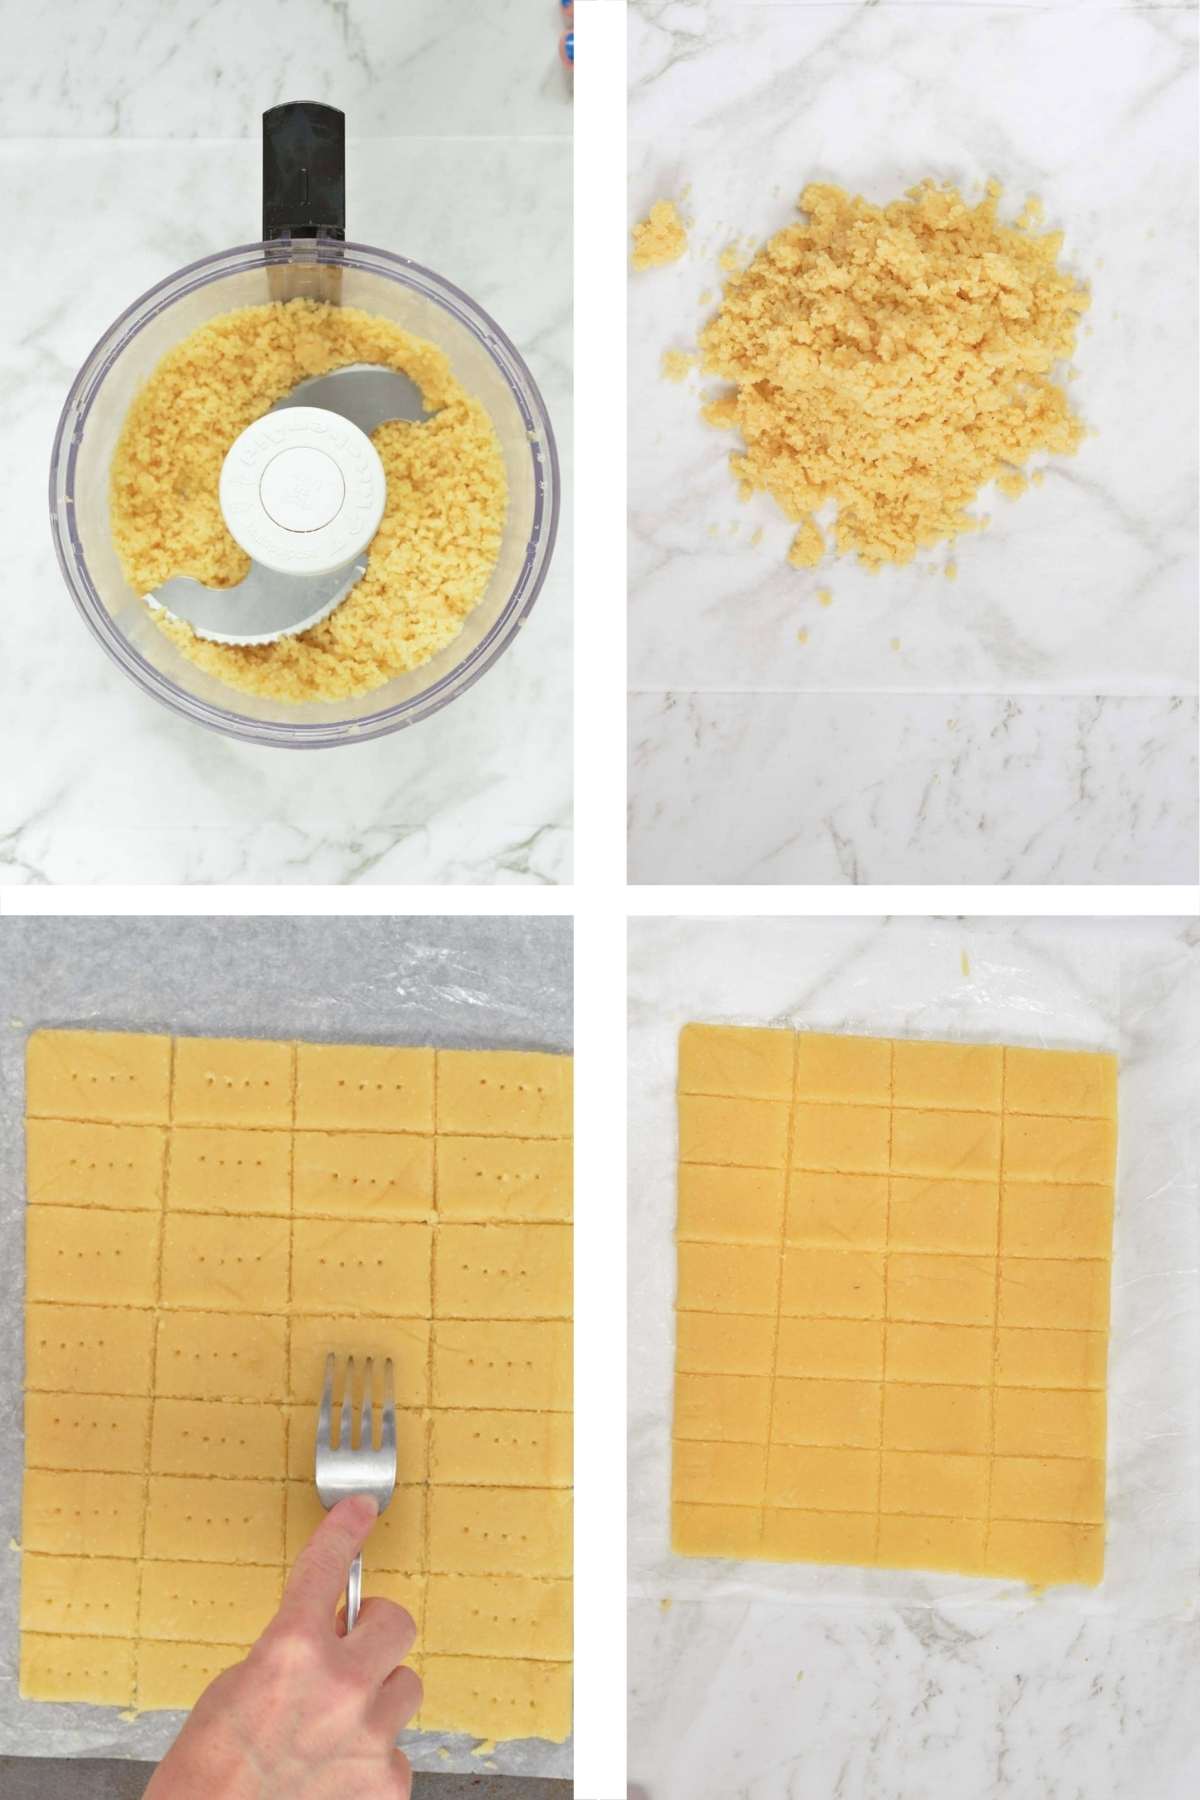 How to make Keto Crackers